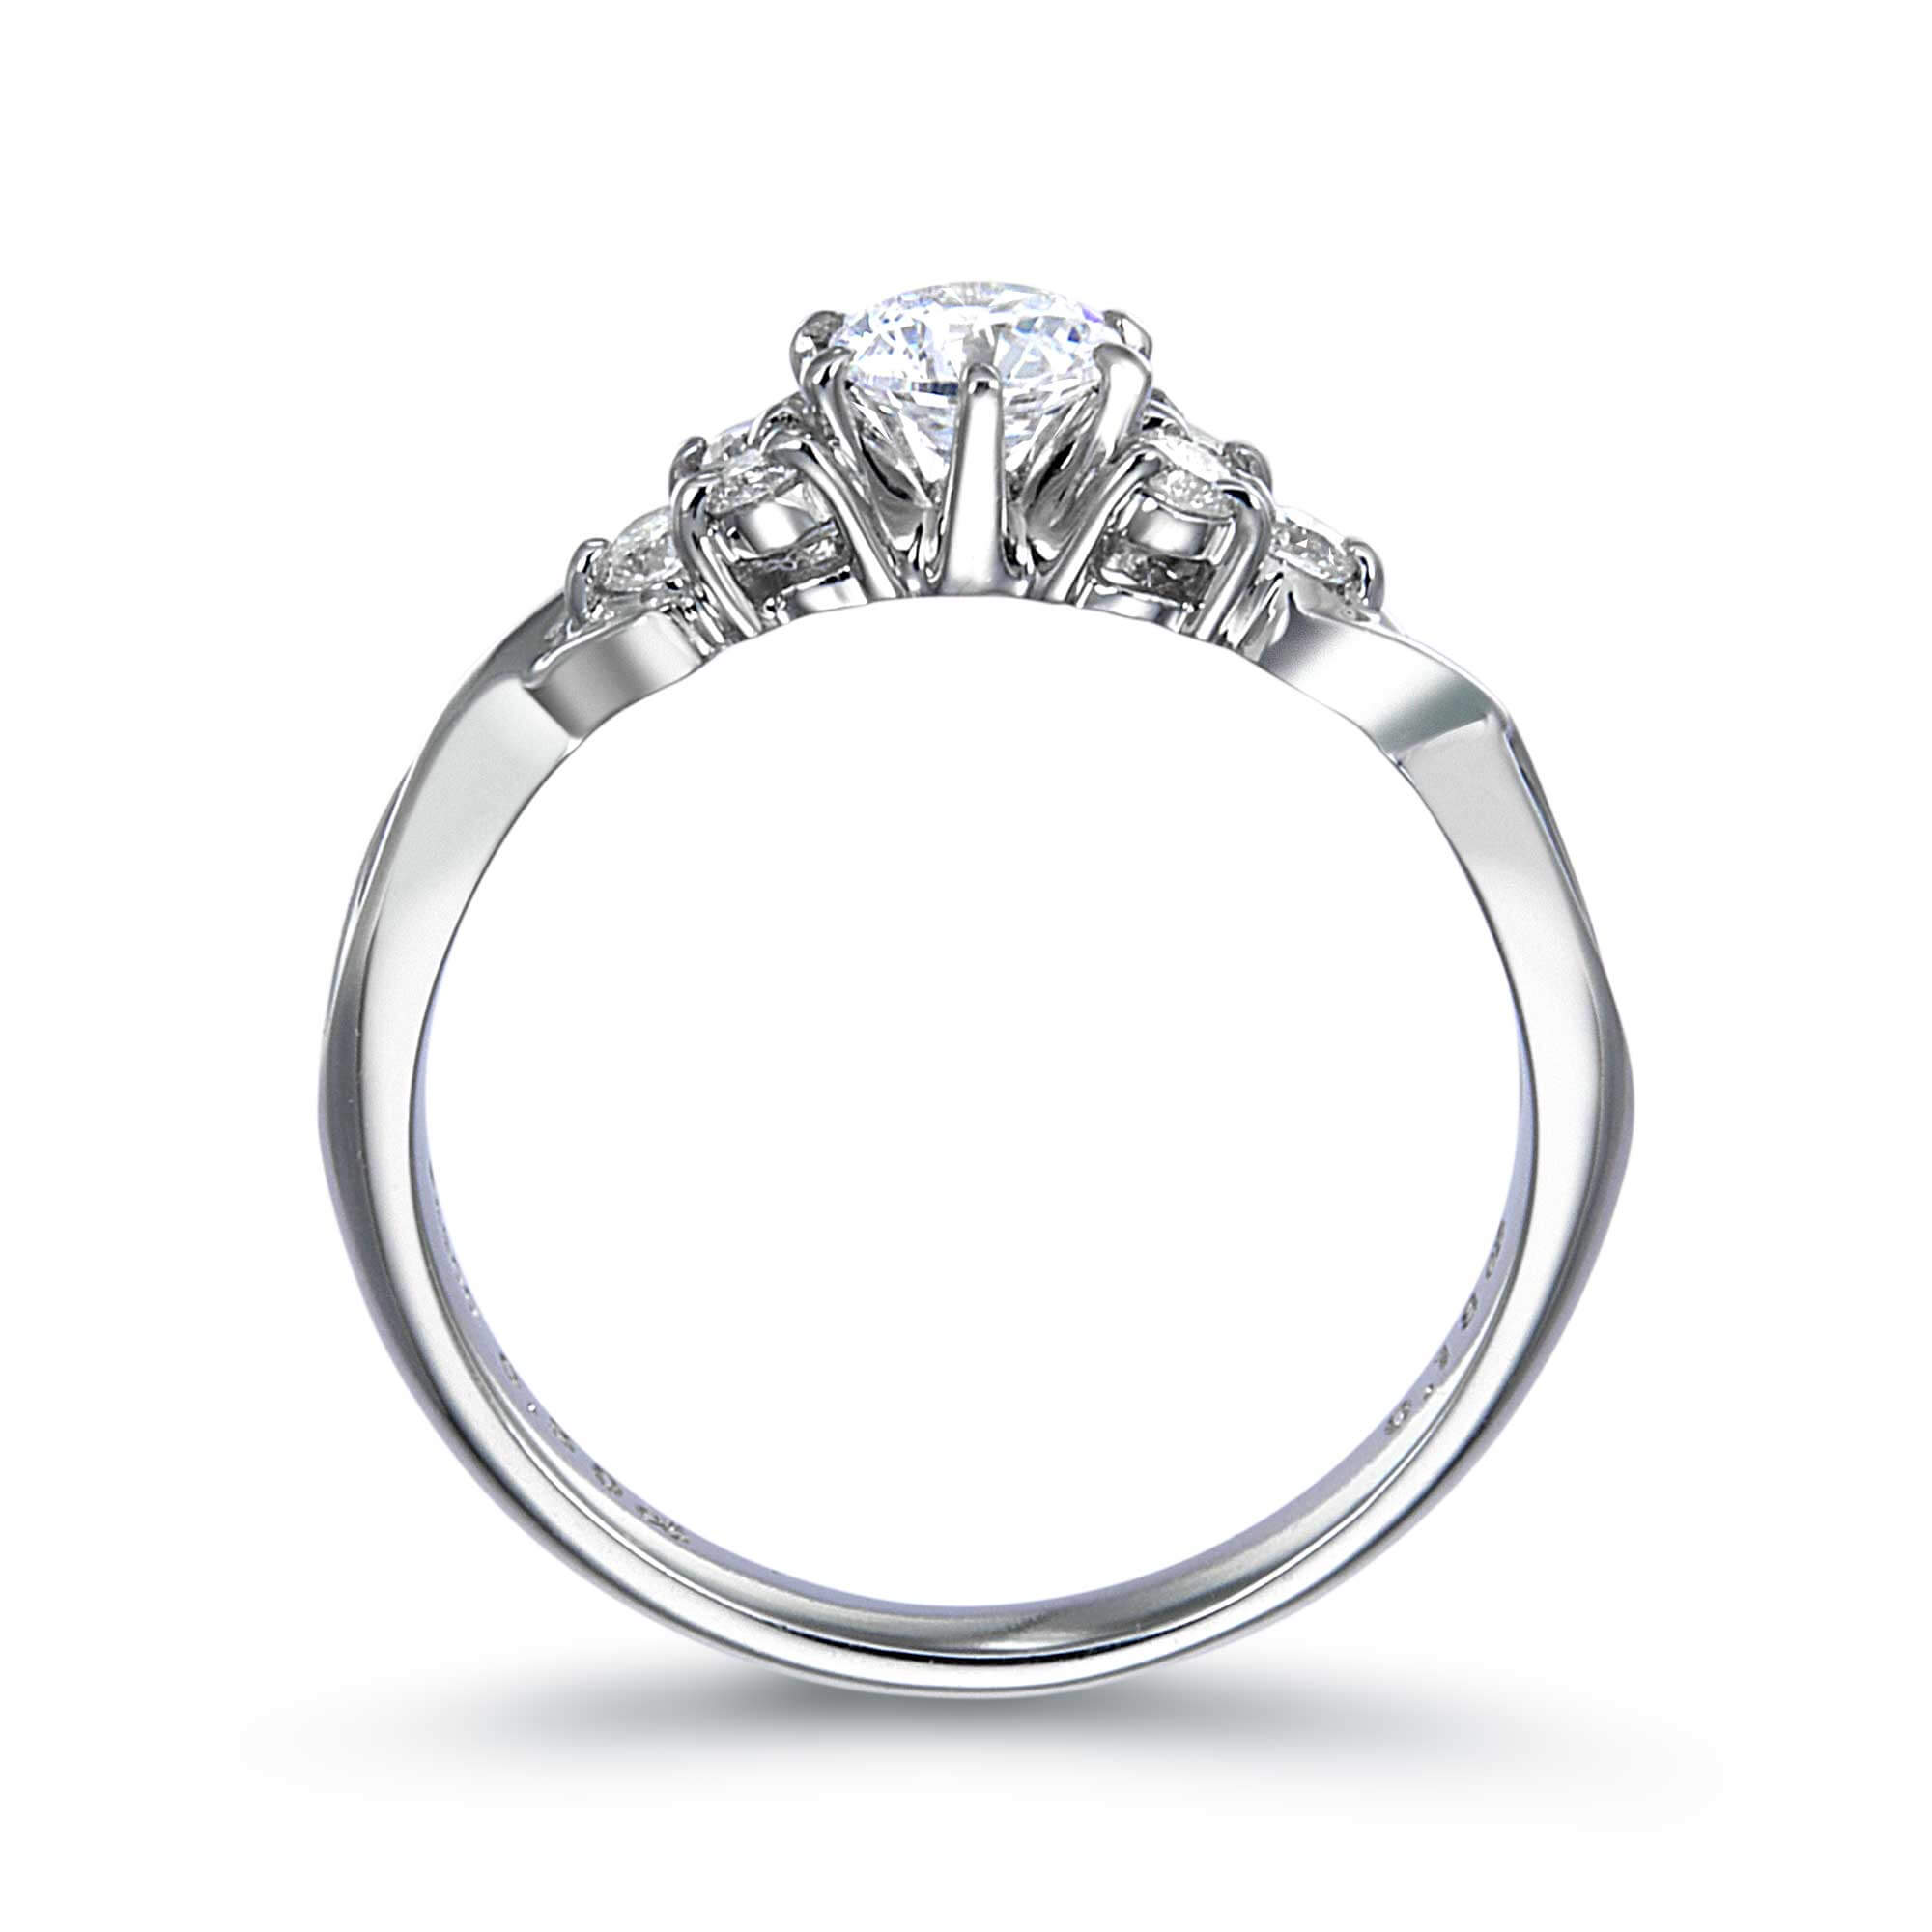 6本爪サイドストーンラウンドダイヤモンドリング | 結婚指輪・婚約指輪